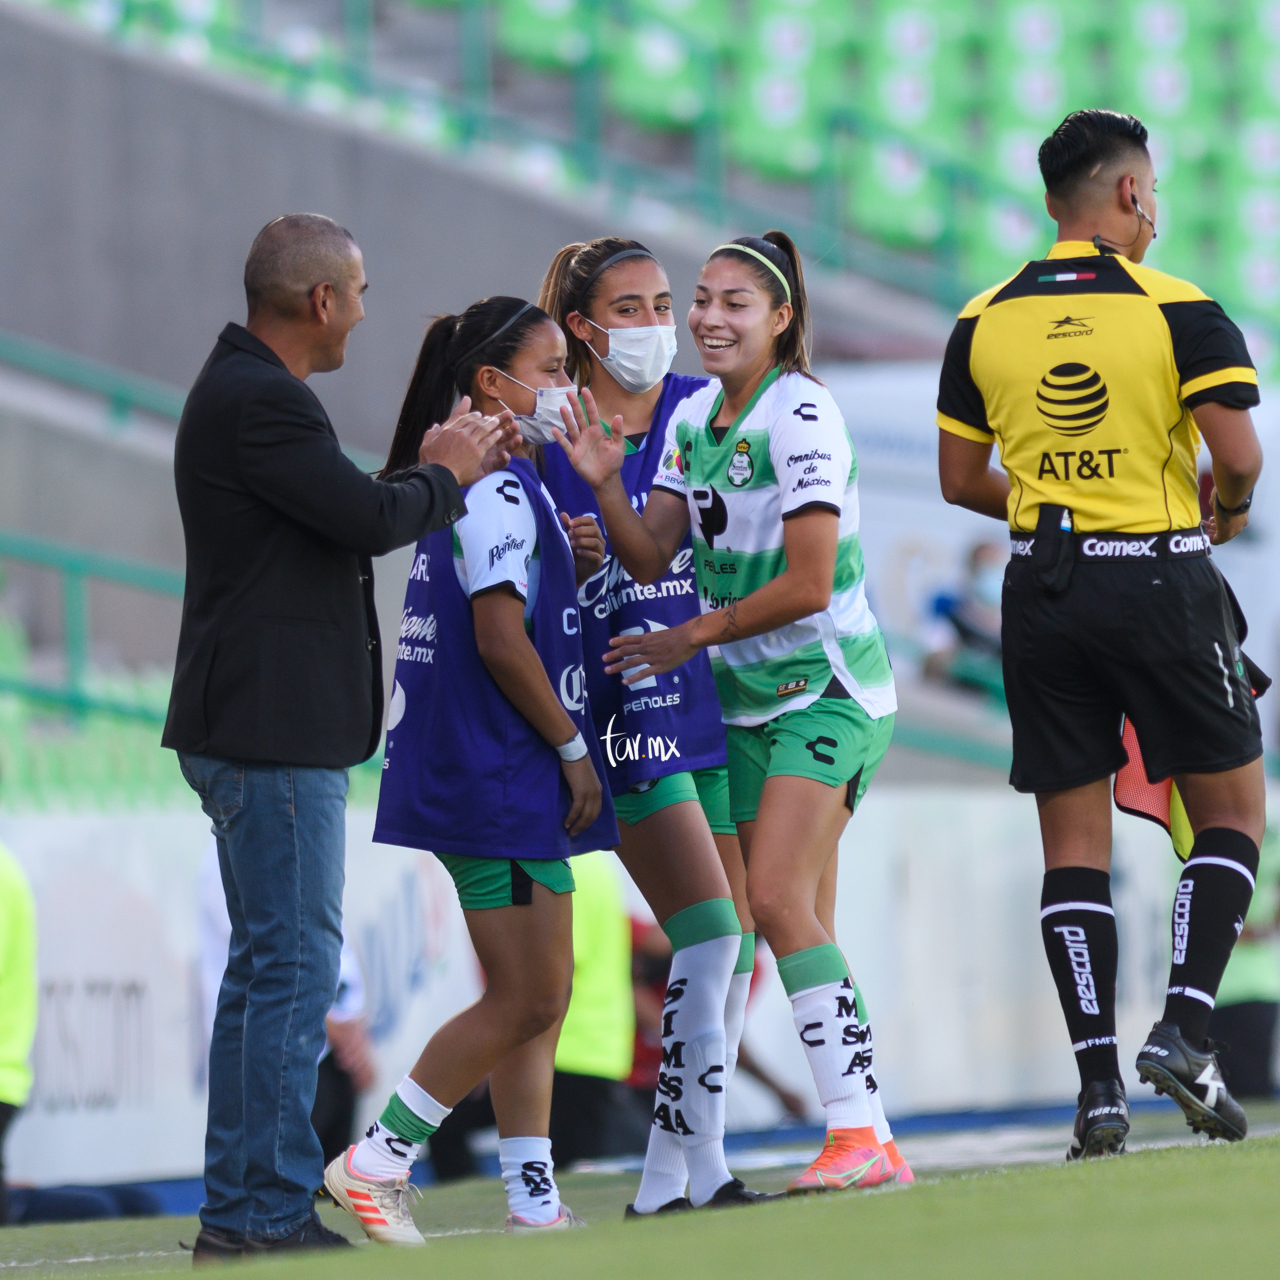 Celebración de gol, Lia Romero